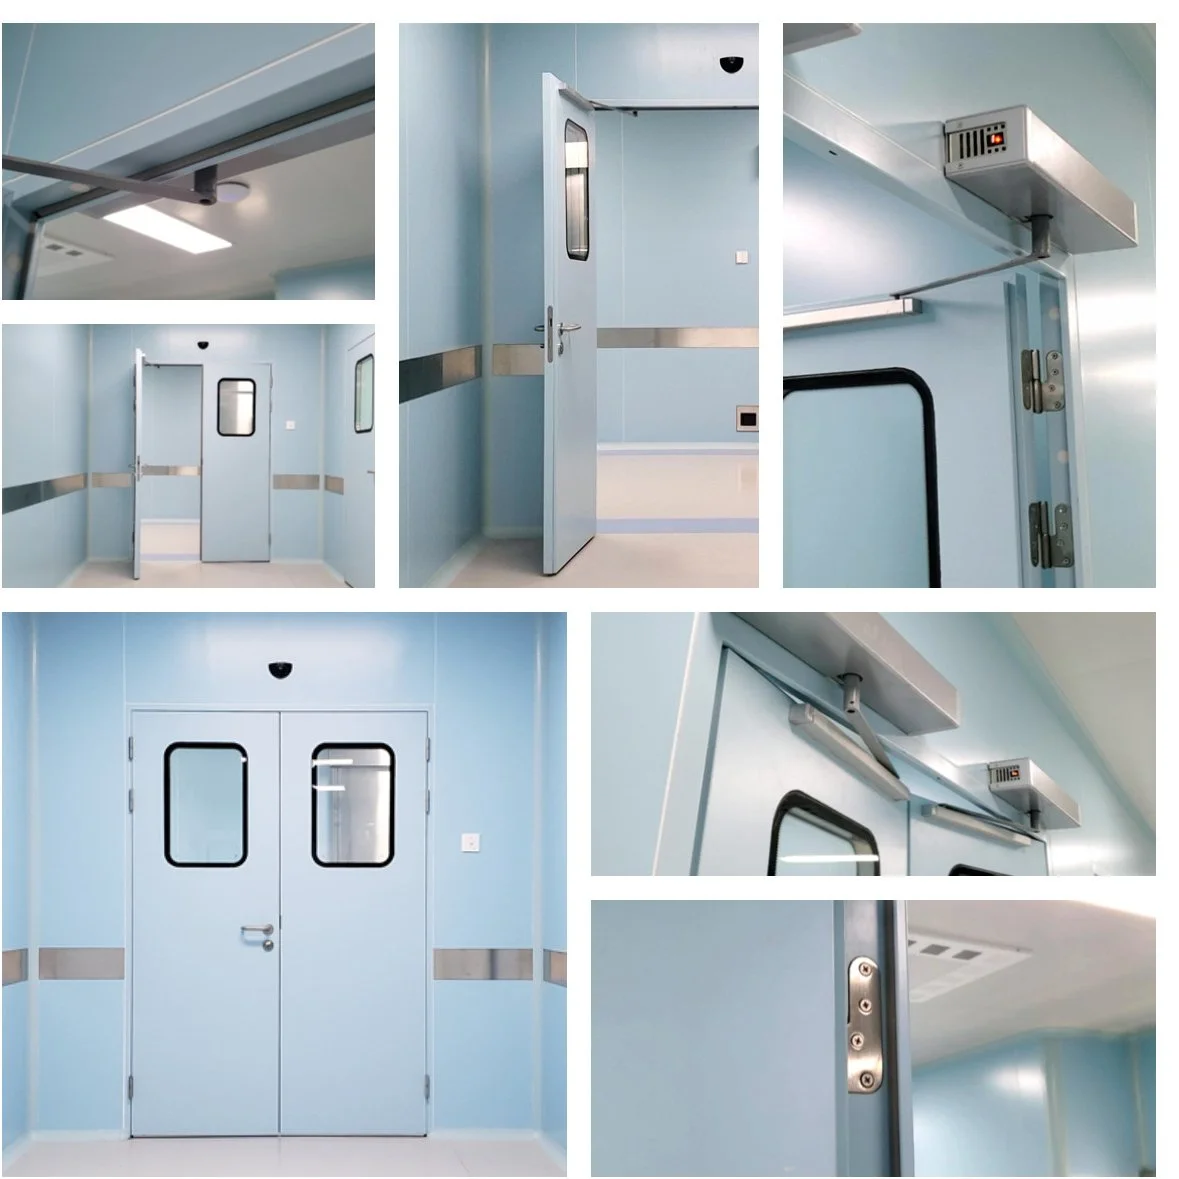 aluminum frame tempered glass,aluminum door frame handle,glass door floor spring,ss level handle,tempered glass shower door handle